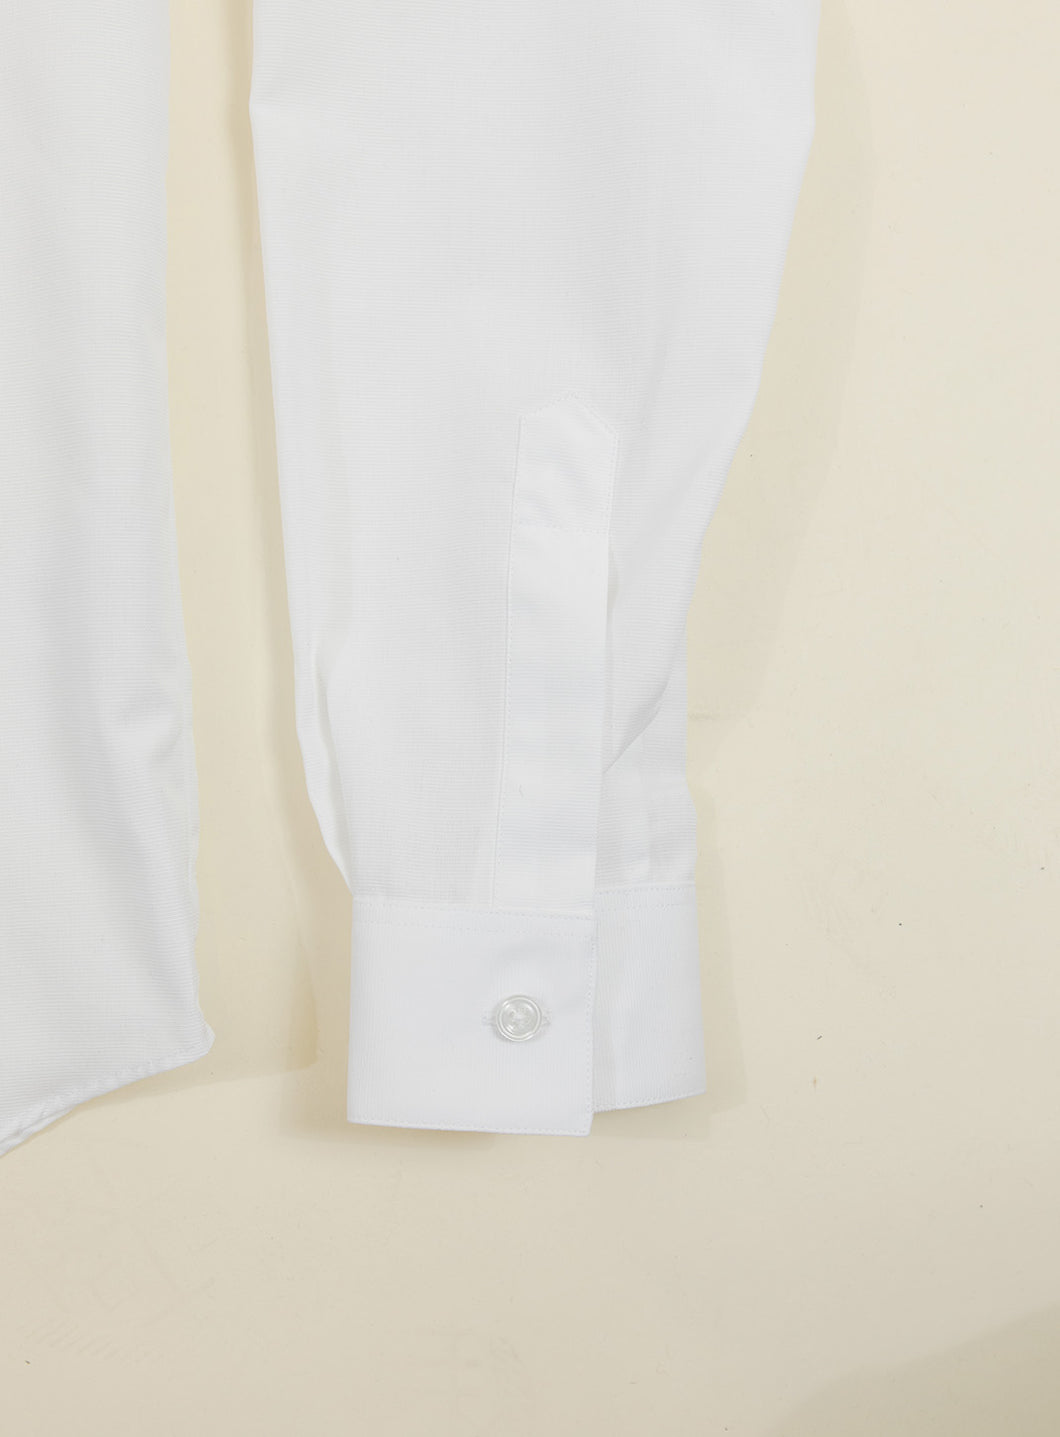 Chemise à Faux Col Bord-Côte en Ottoman Blanc